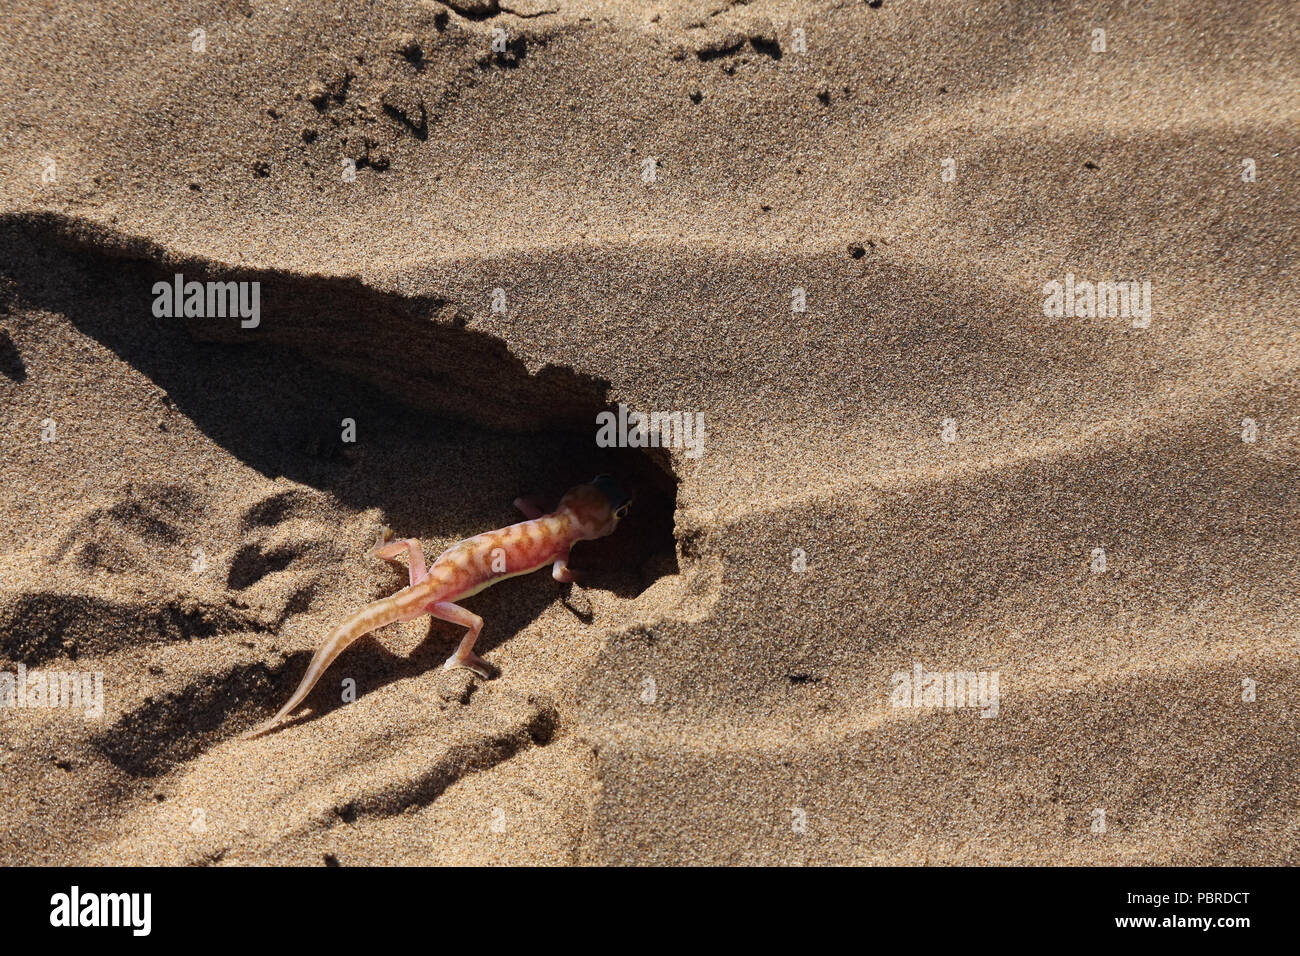 Sable du Namib gecko (Pachydactylus rangei) enterrer lui-même dans le sable, Désert du Namib, Namibie. Banque D'Images